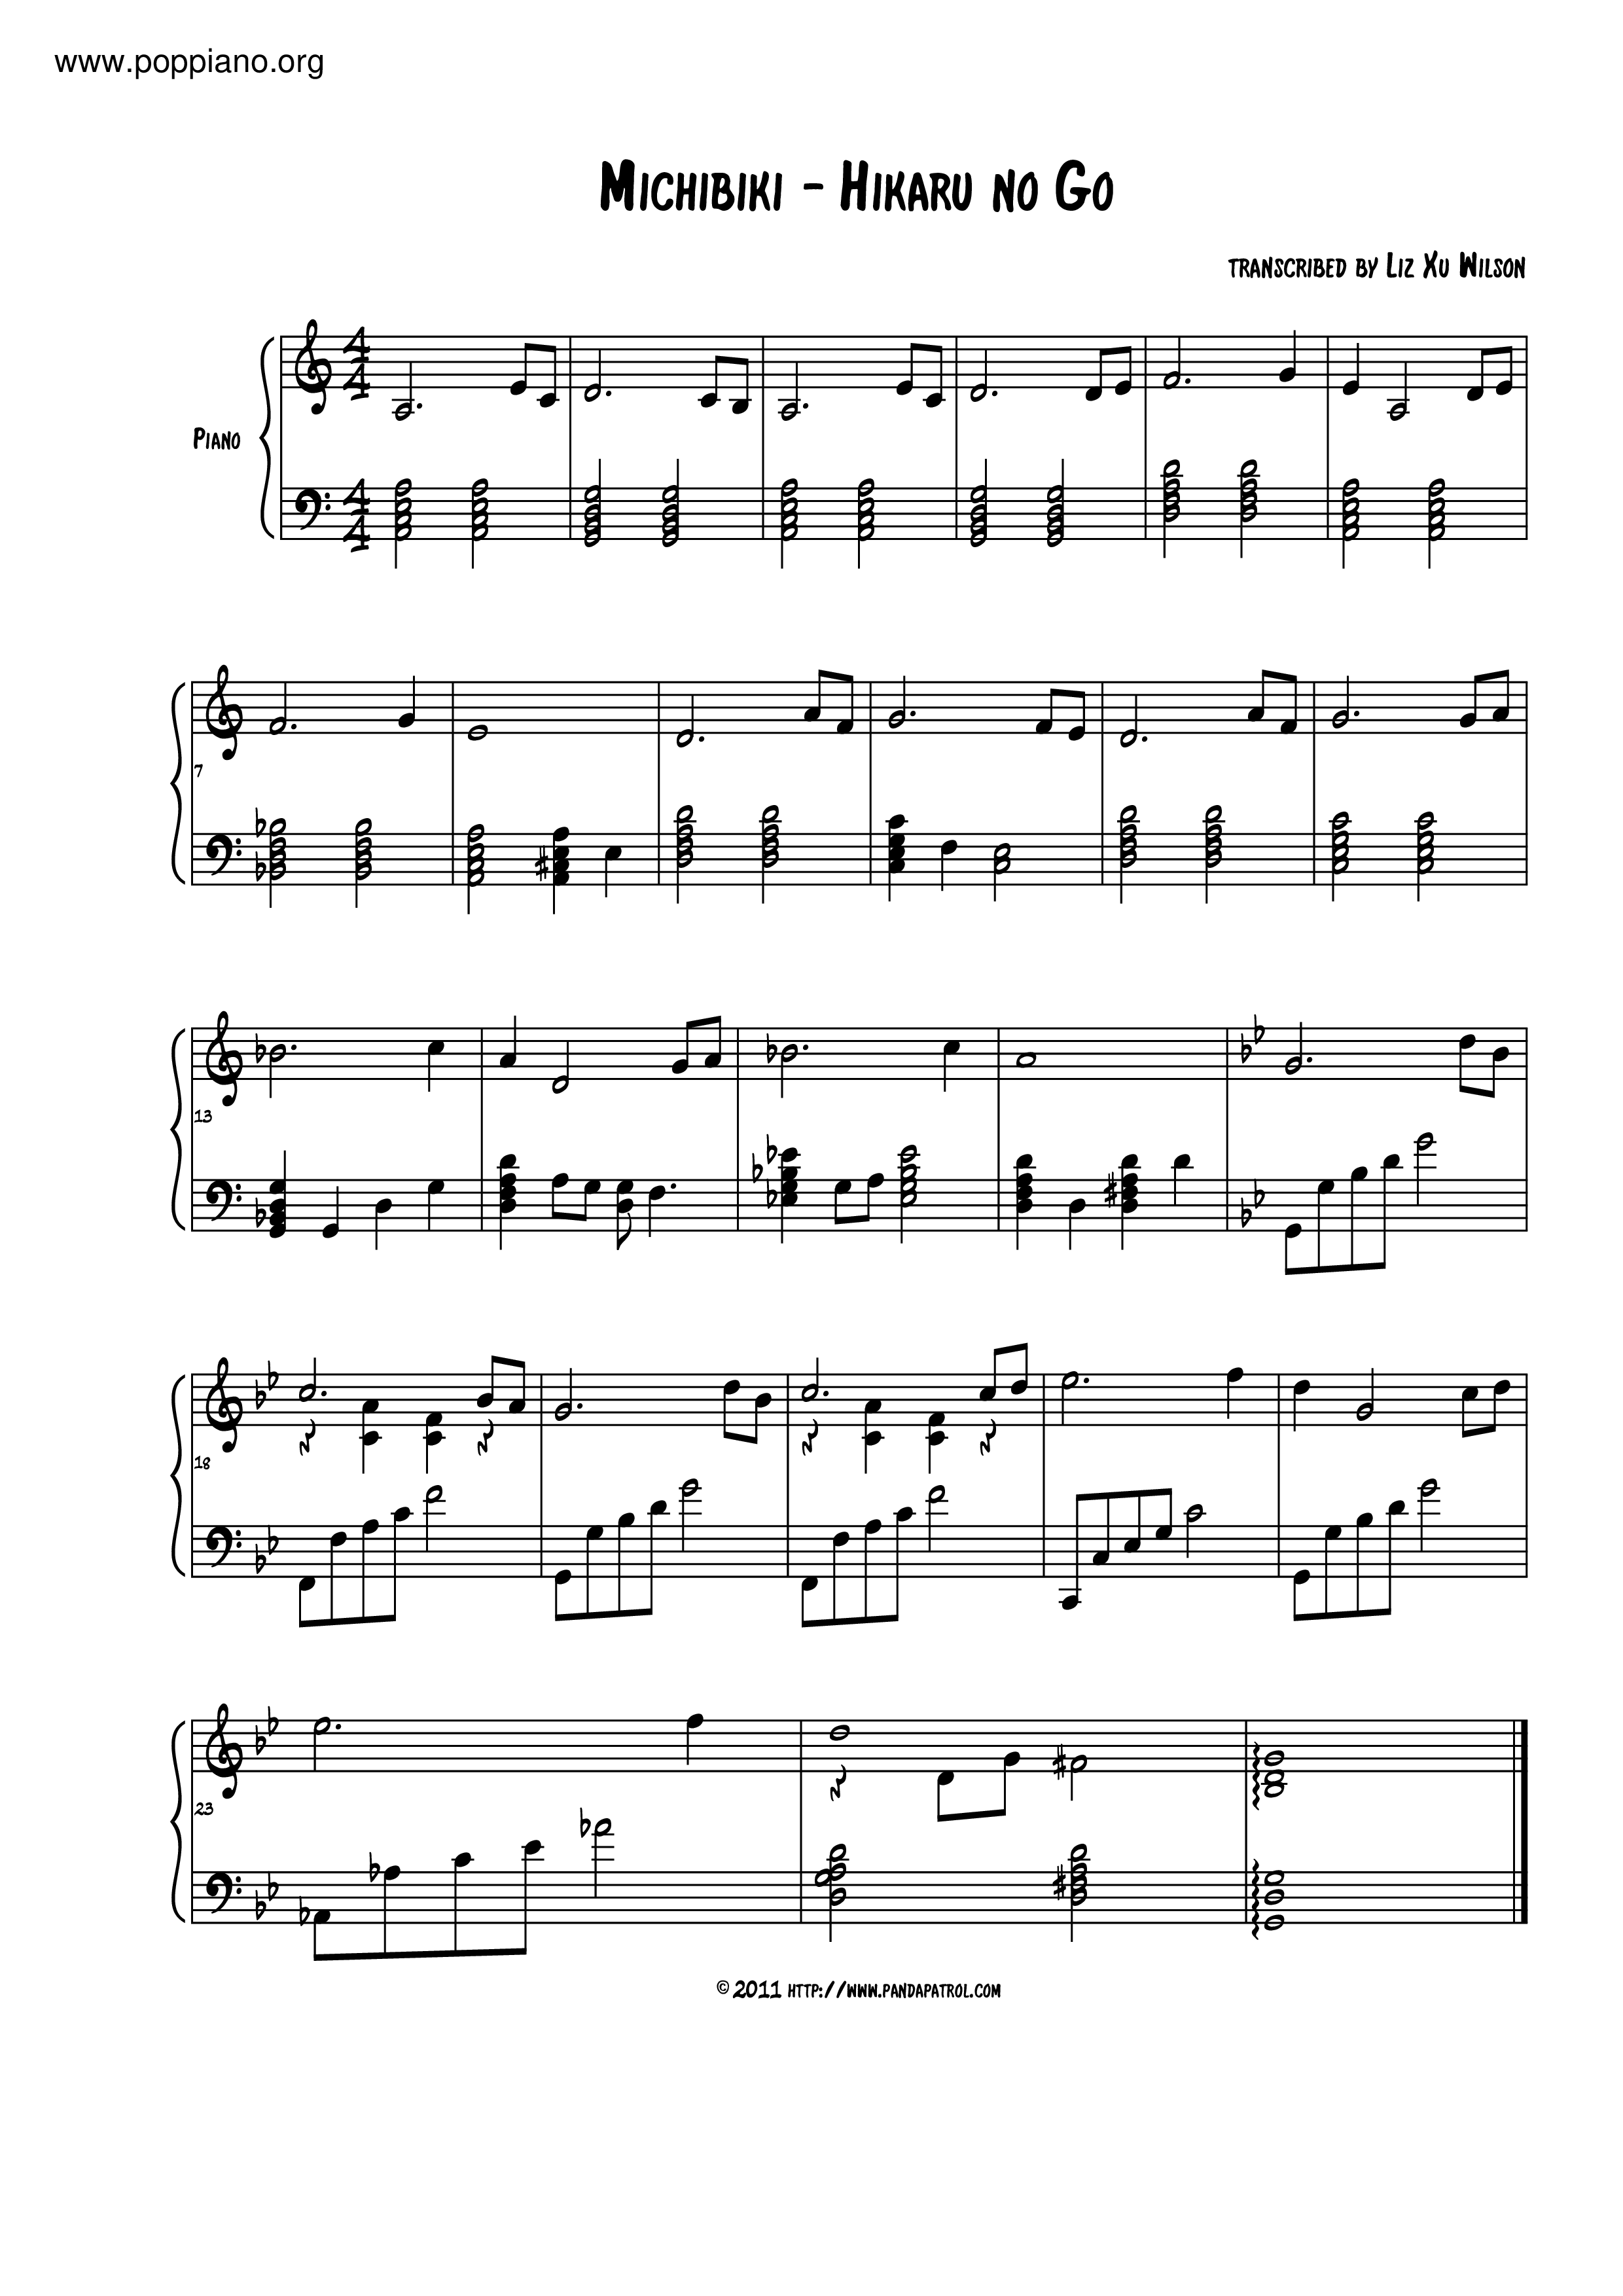 ☆ 棋魂-Michibiki 琴谱/五线谱pdf-香港流行钢琴协会琴谱下载☆